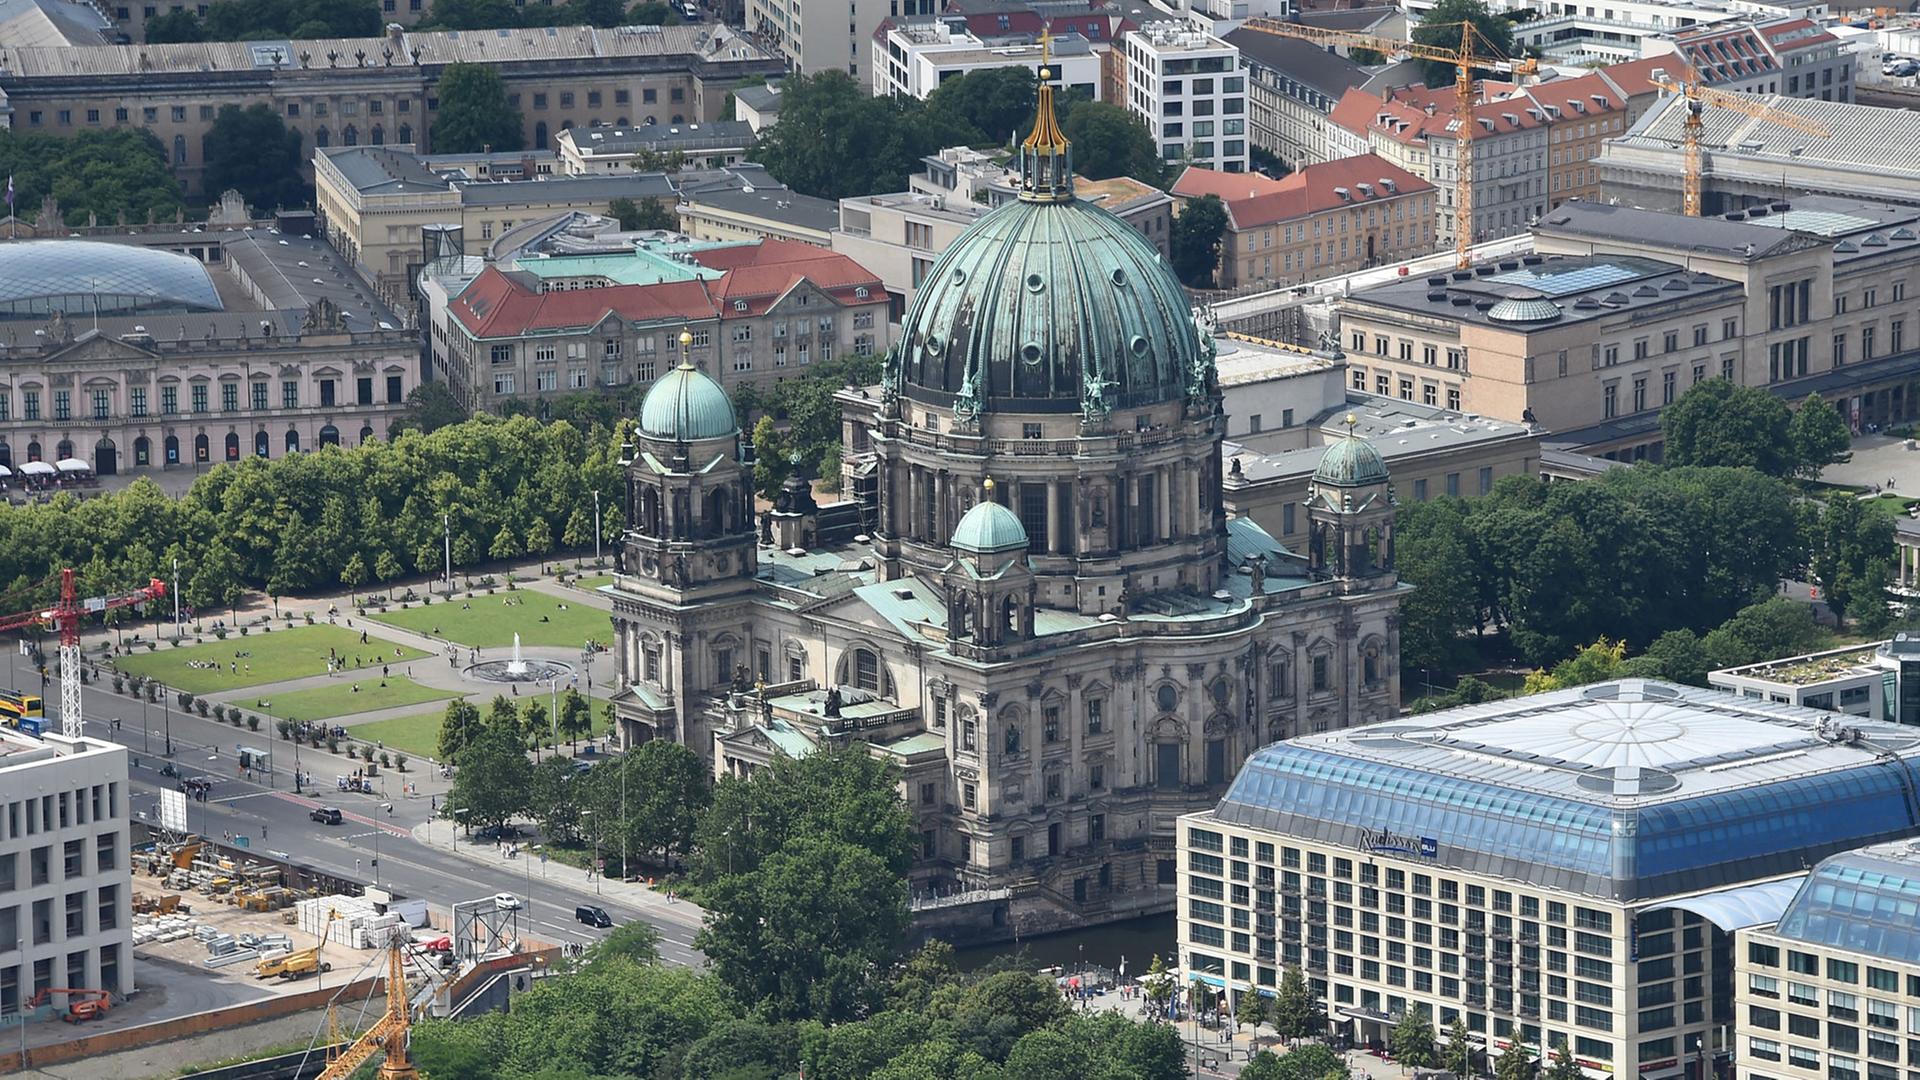 Der Berliner Dom in Berlin, aufgenommen am 16.06.2016.